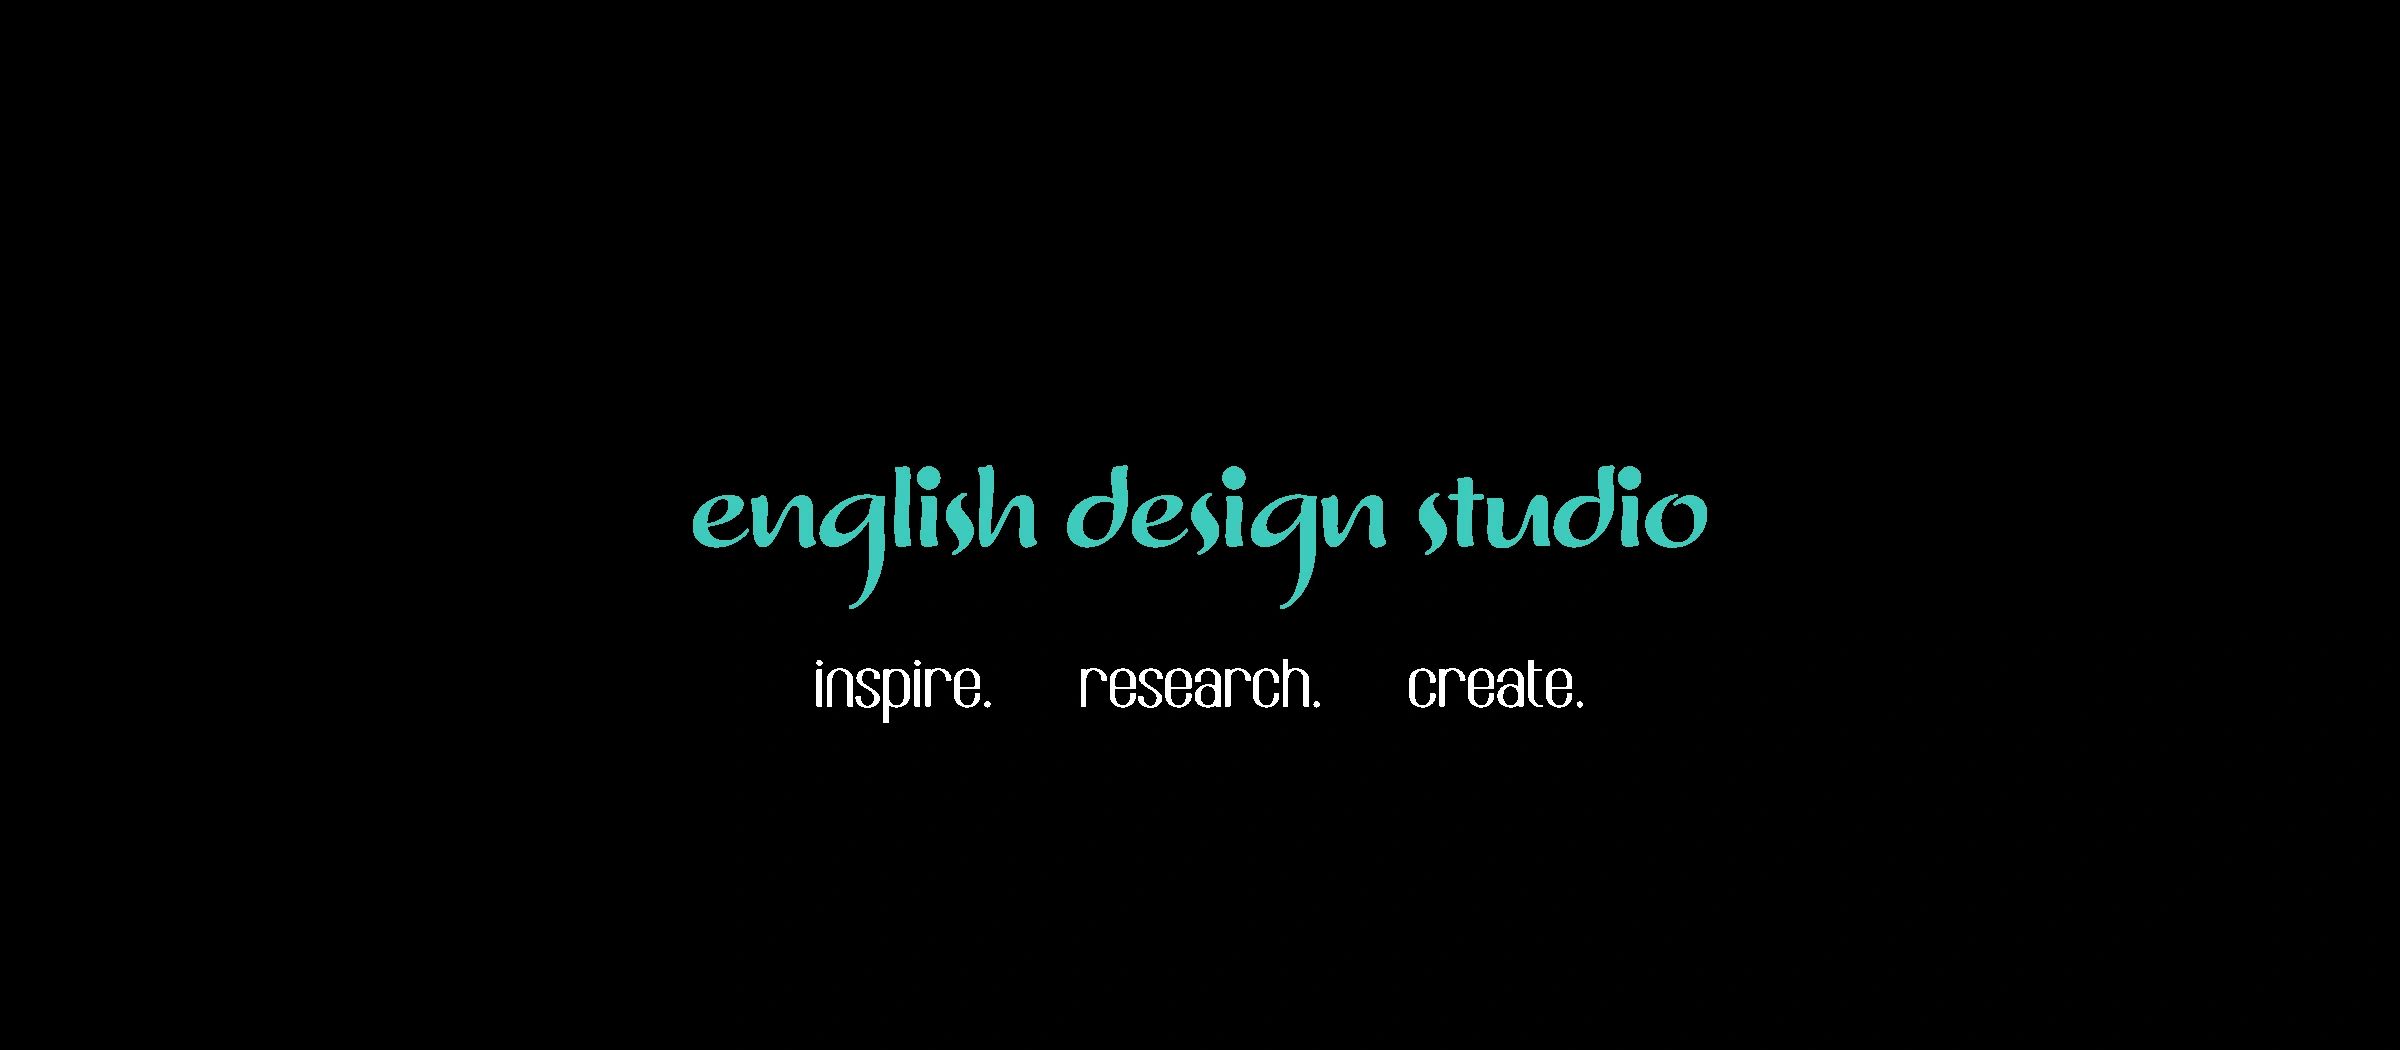 English Design Studio - Textile, Design